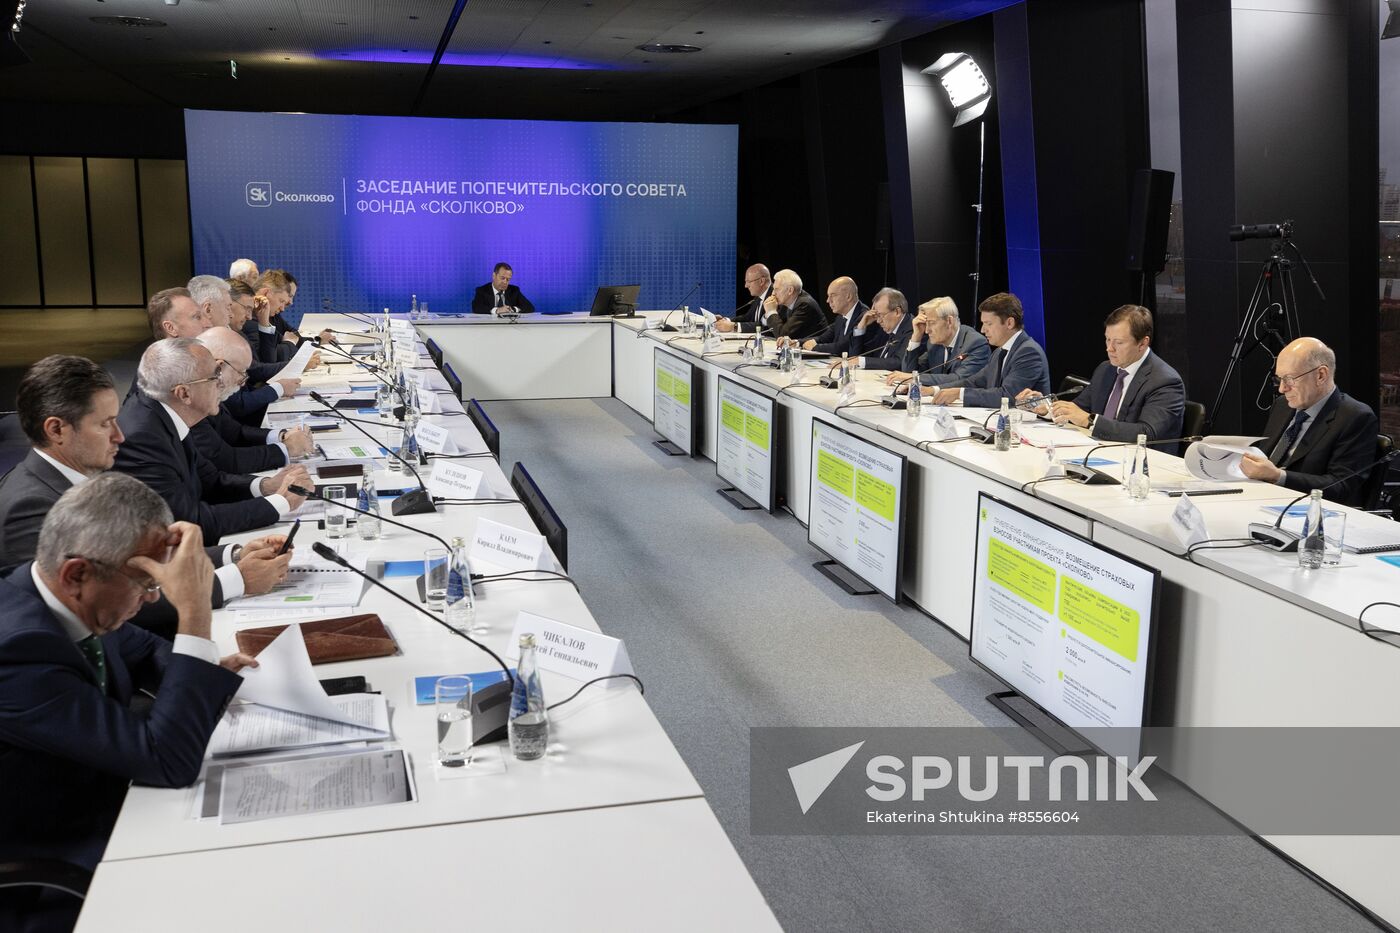 Russia Medvedev Skolkovo Foundation Trustees Board